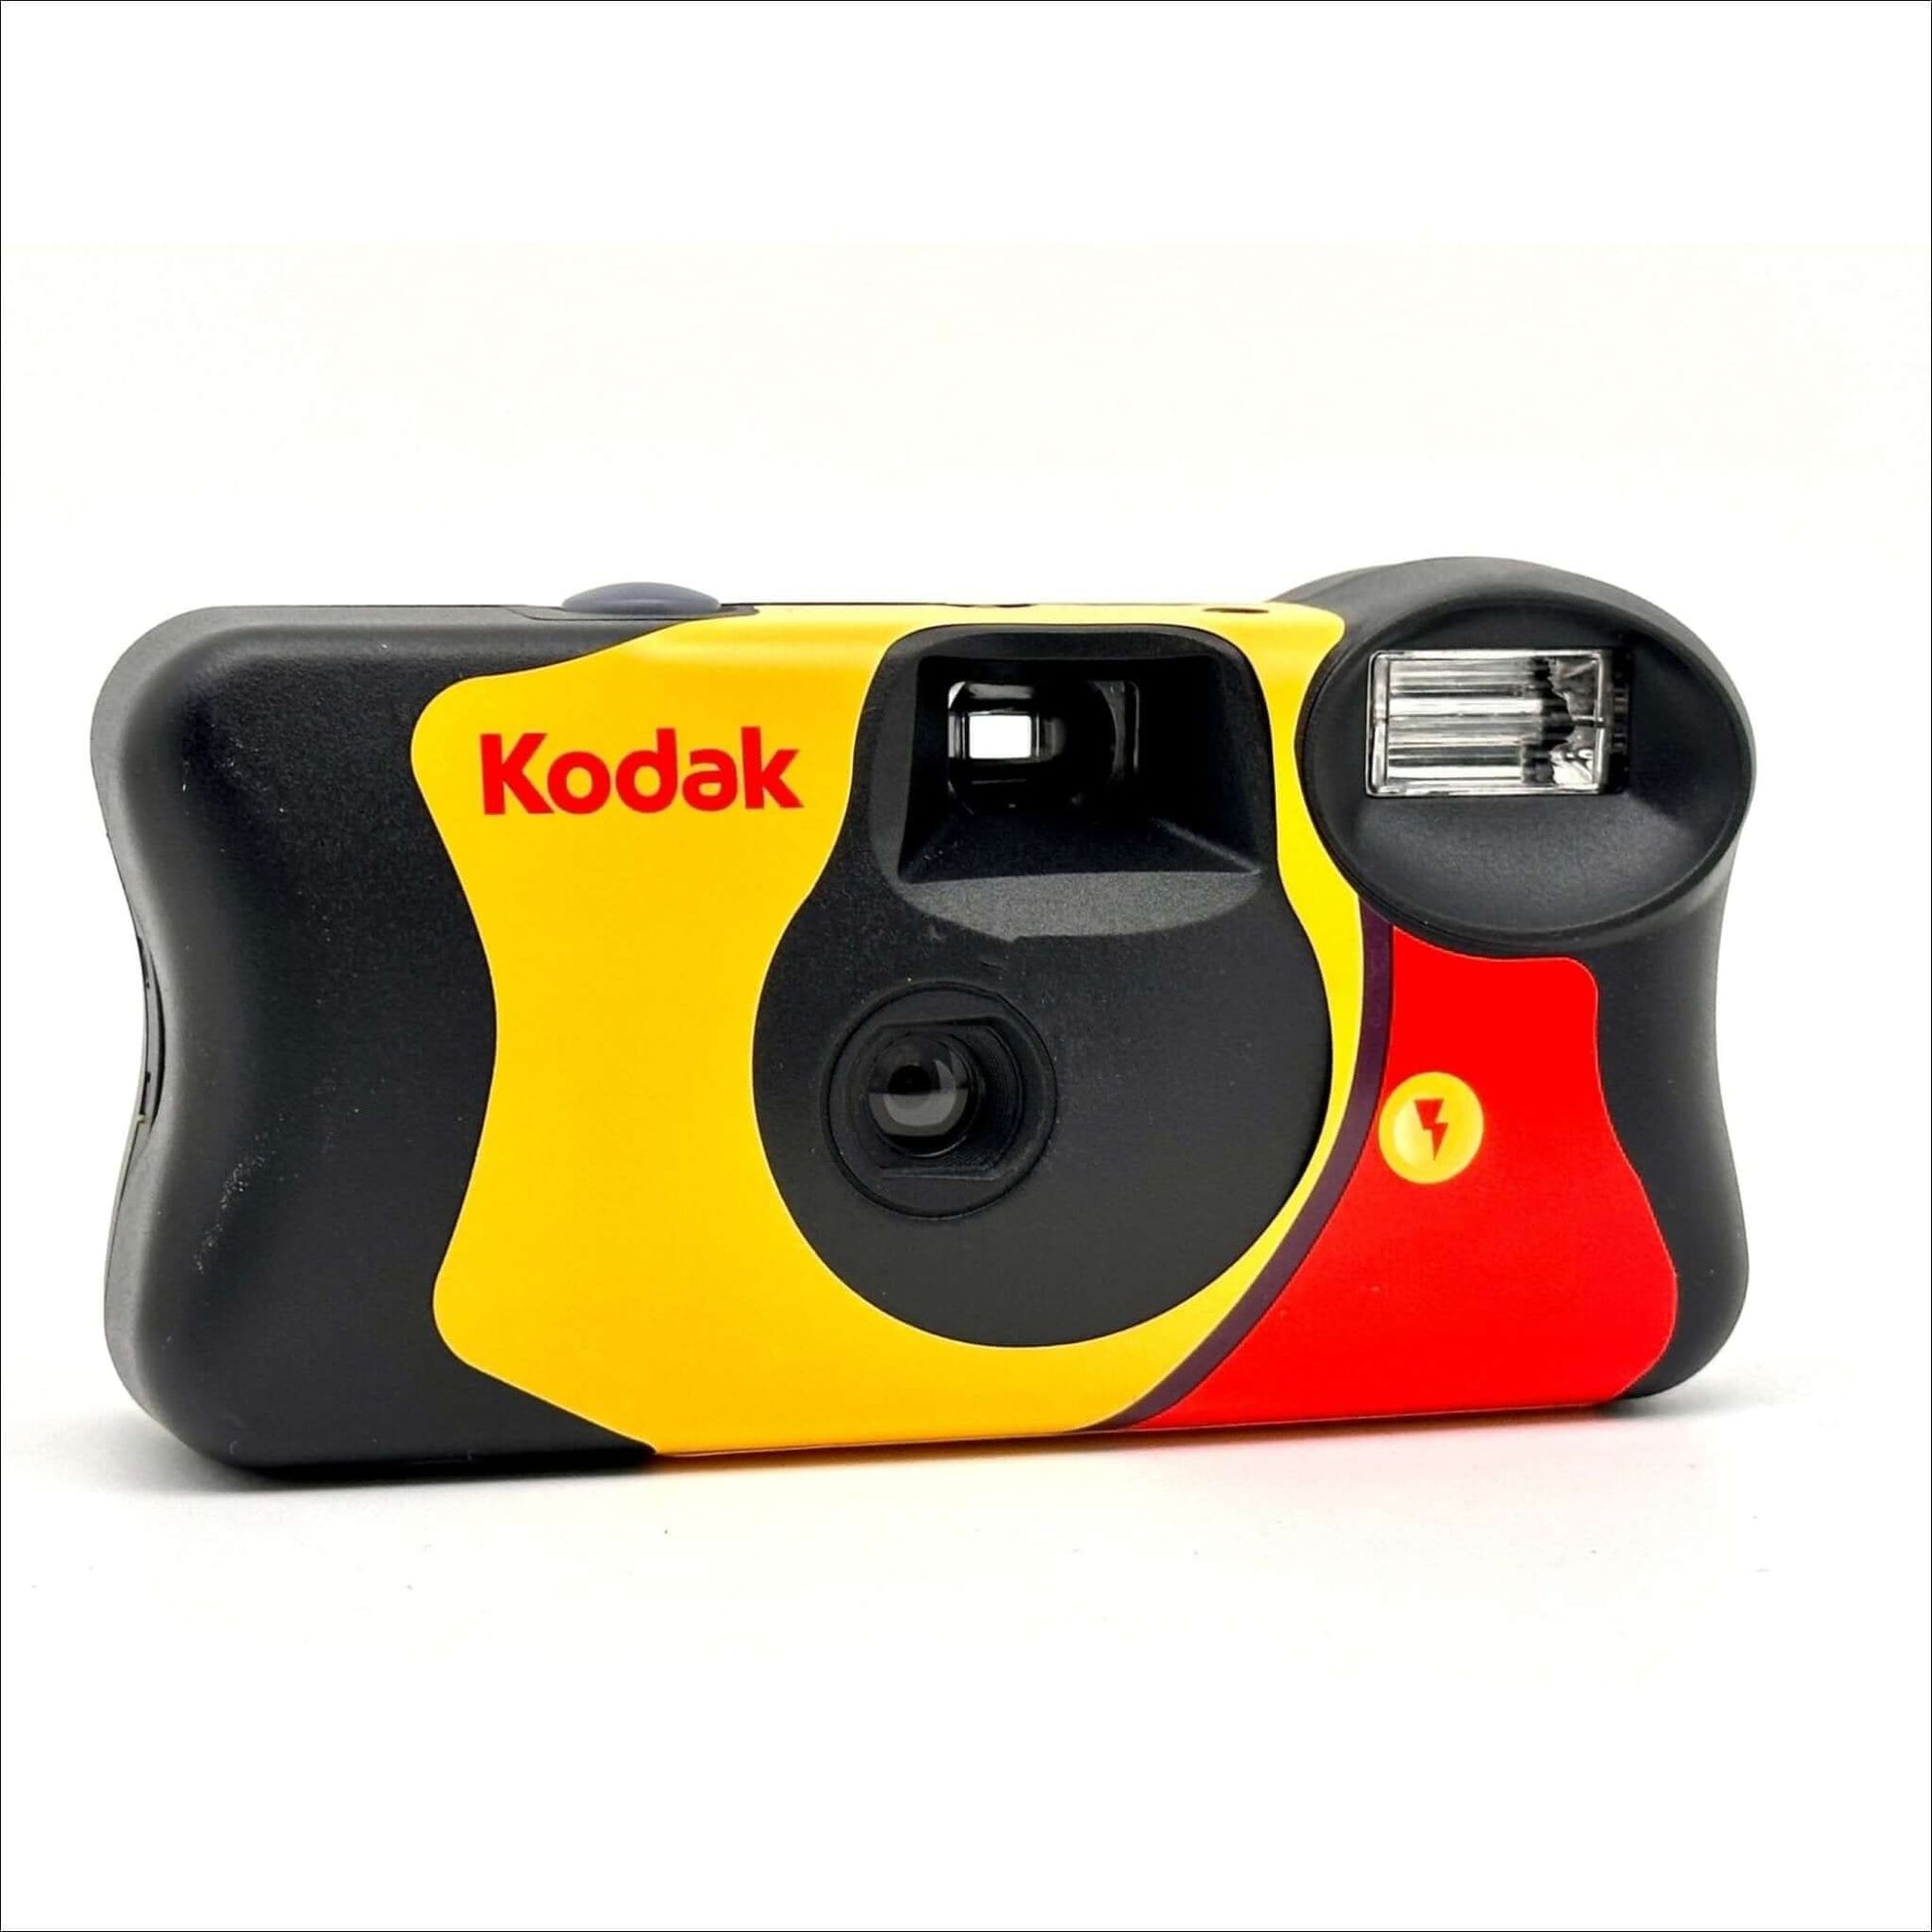 Kodak Funsaver Flash Single Use 35mm Camera (asa 800), 5 Pack